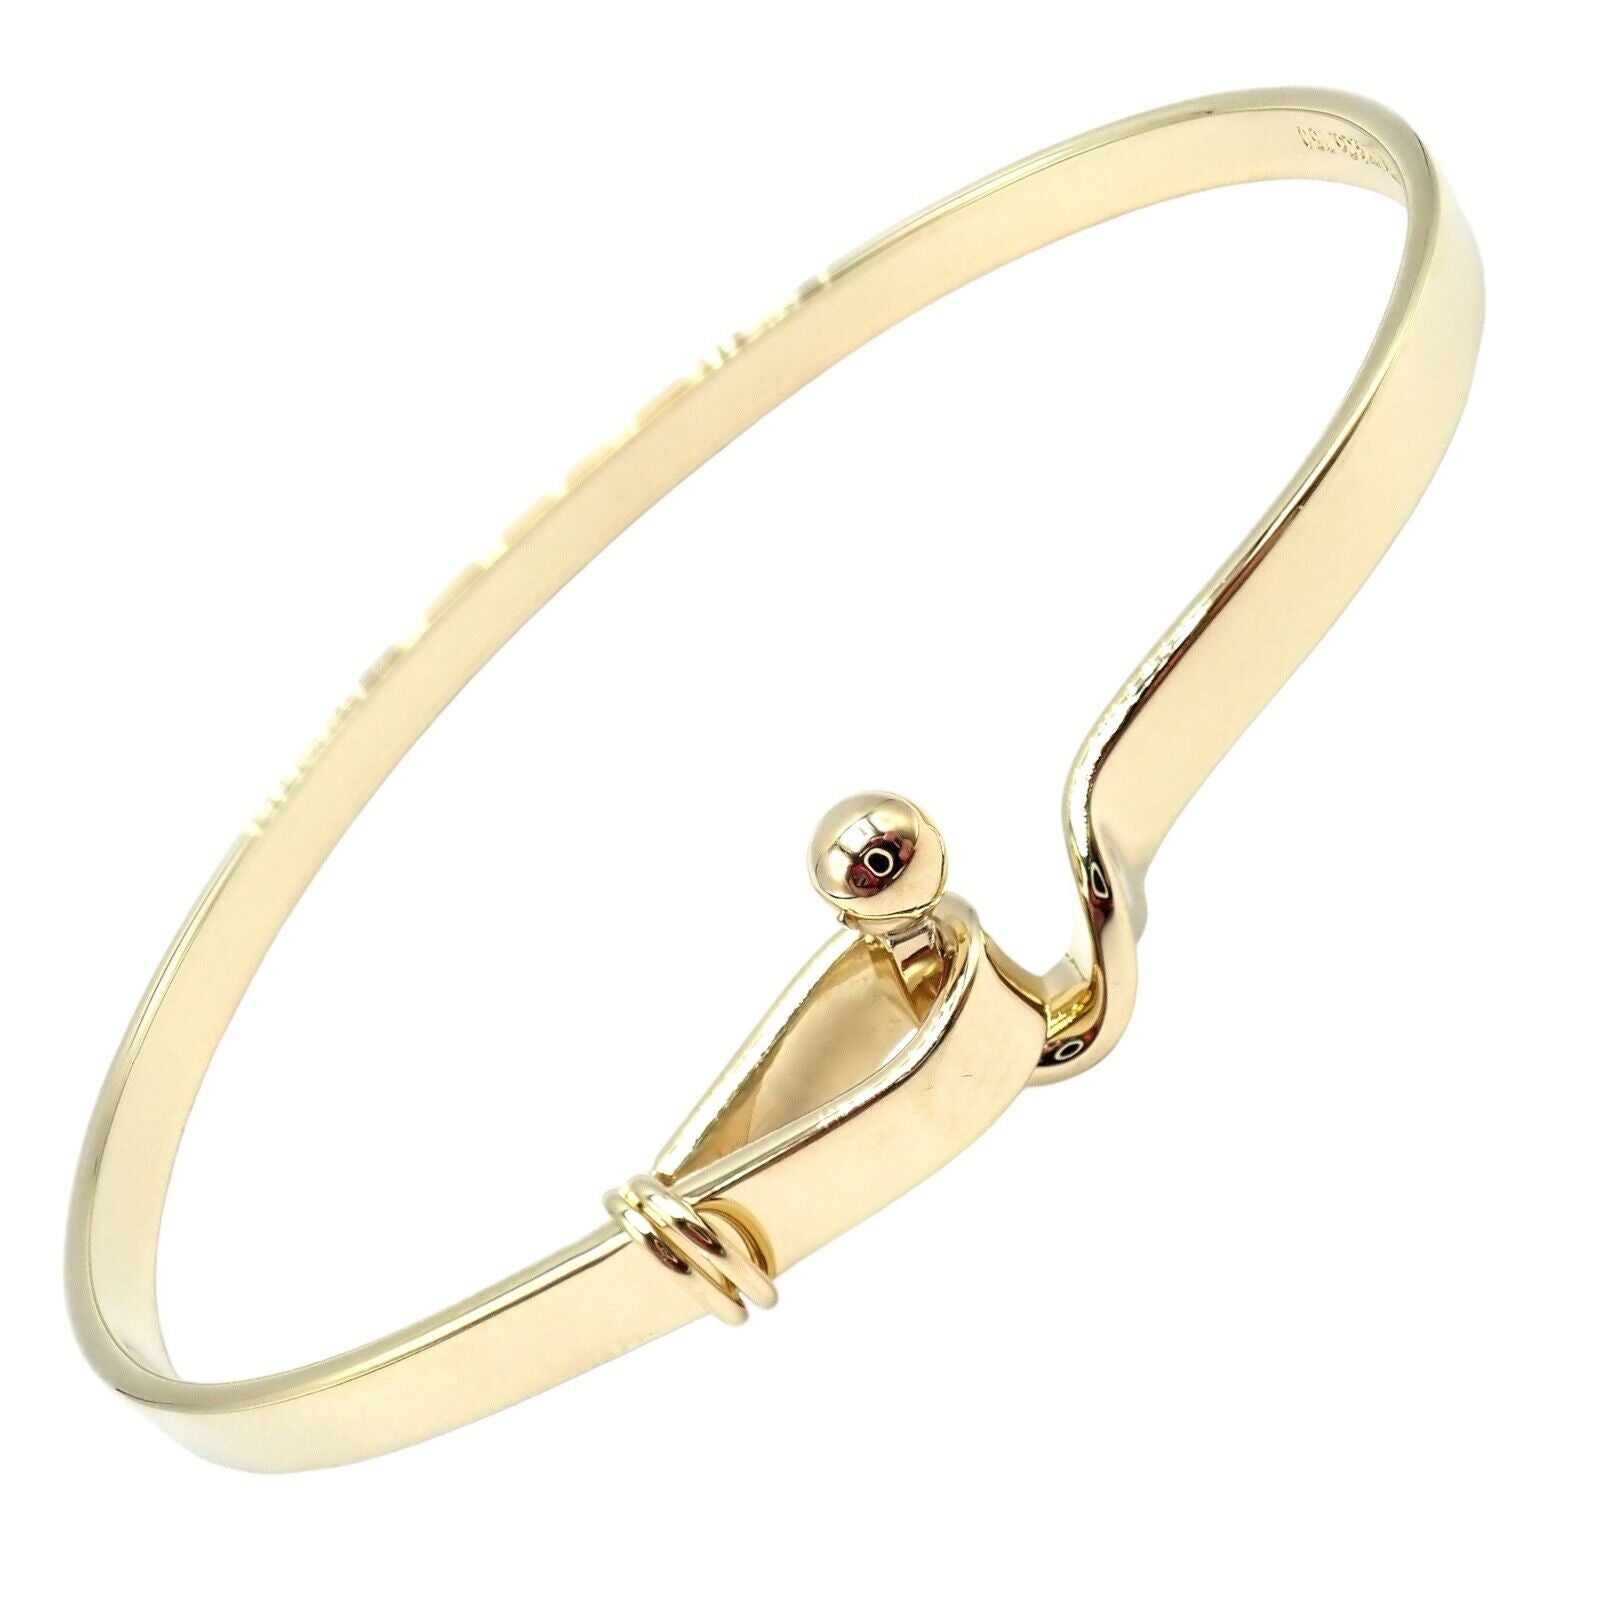 Authentic! Tiffany & Co. 18k Yellow Gold Hook Eye Bangle Bracelet